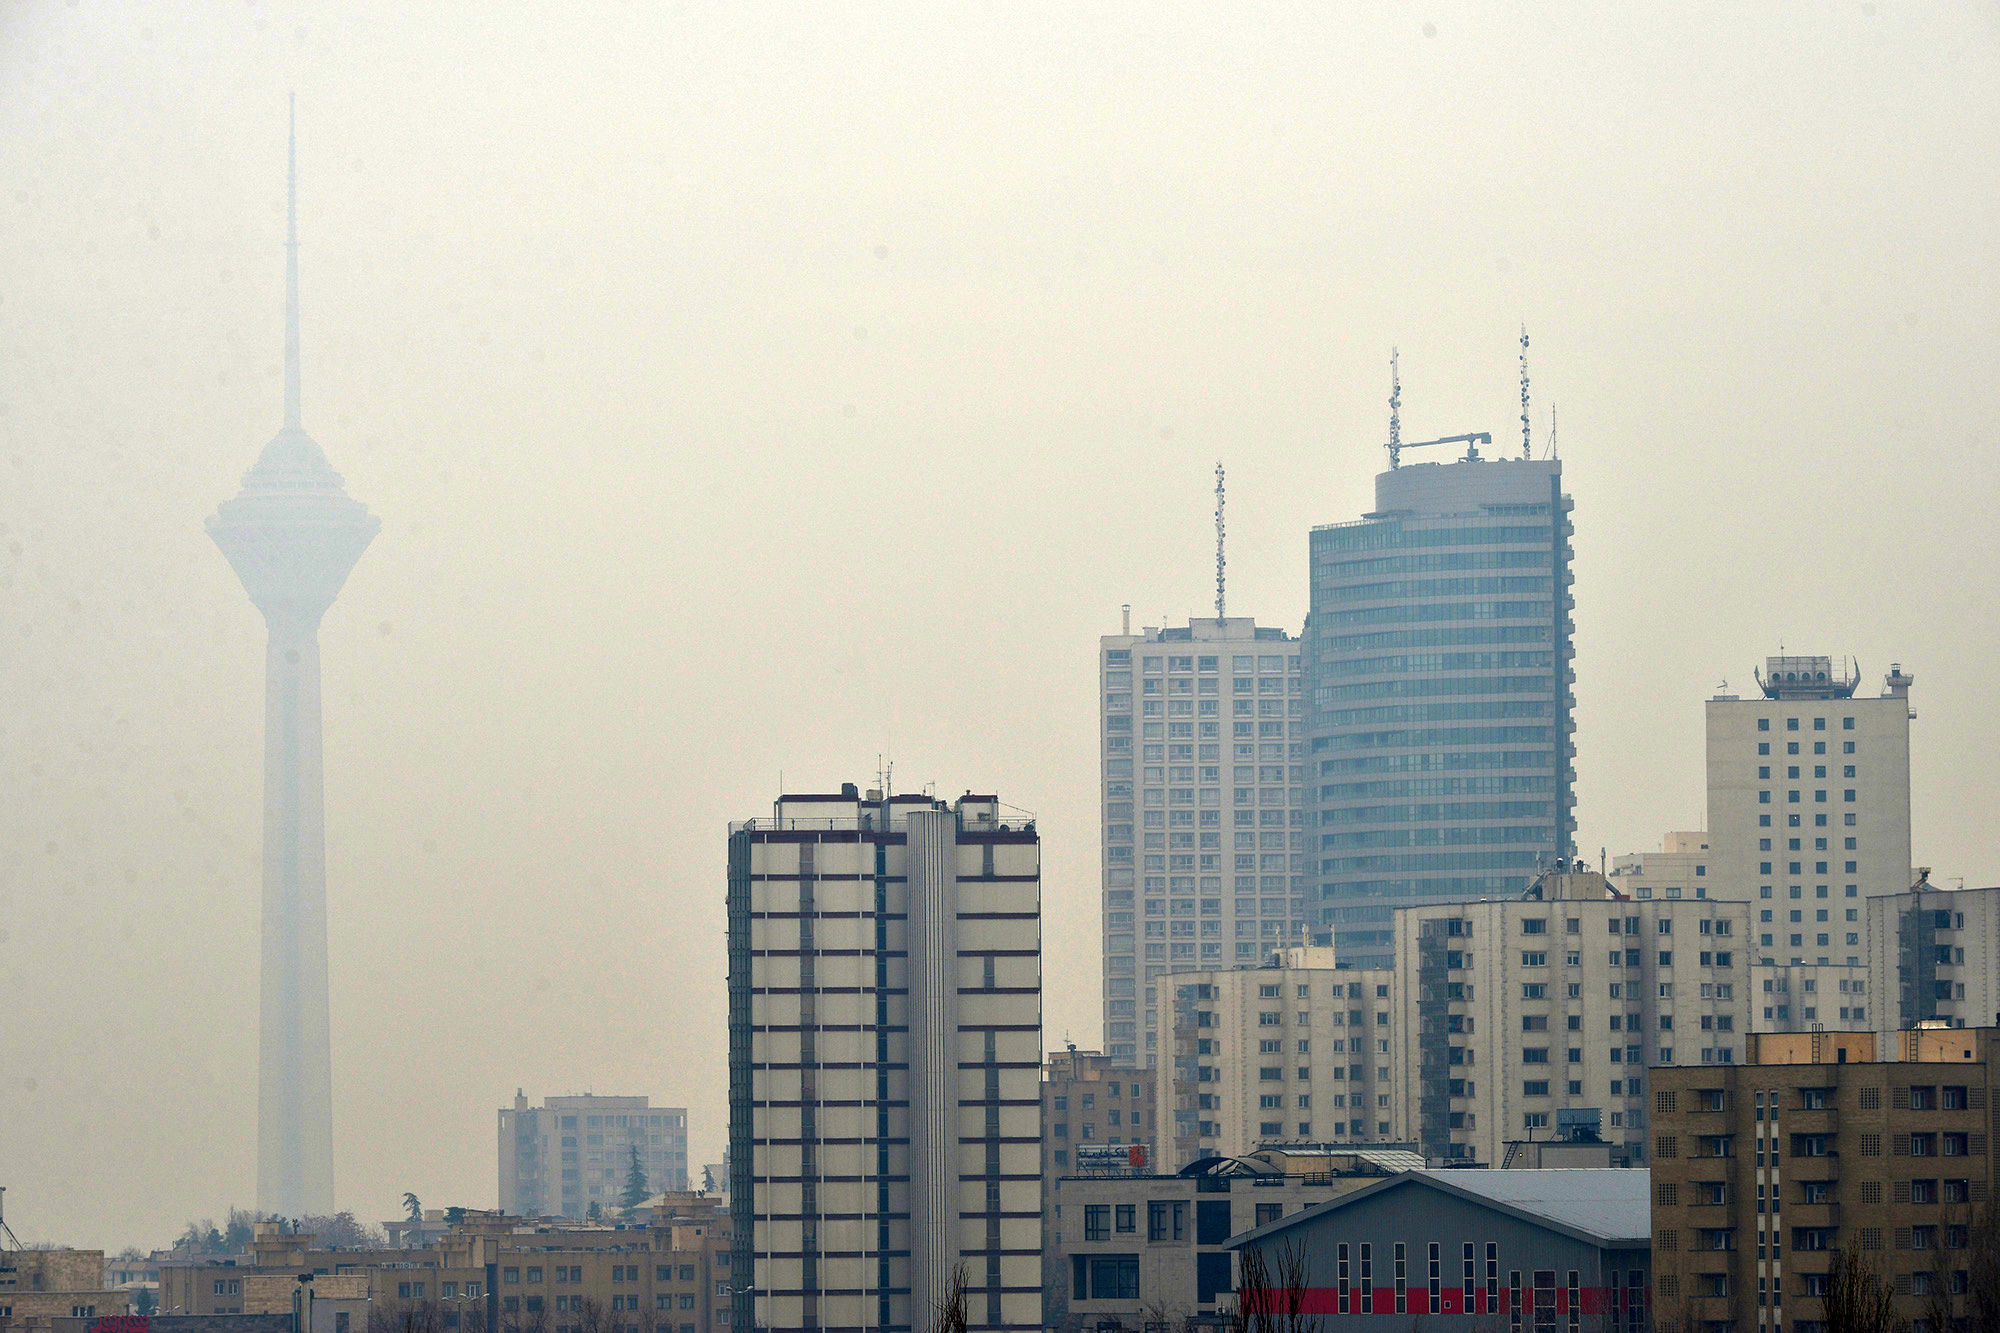 آسمان پایتخت؛ همچنان آلوده و غبارآلود

